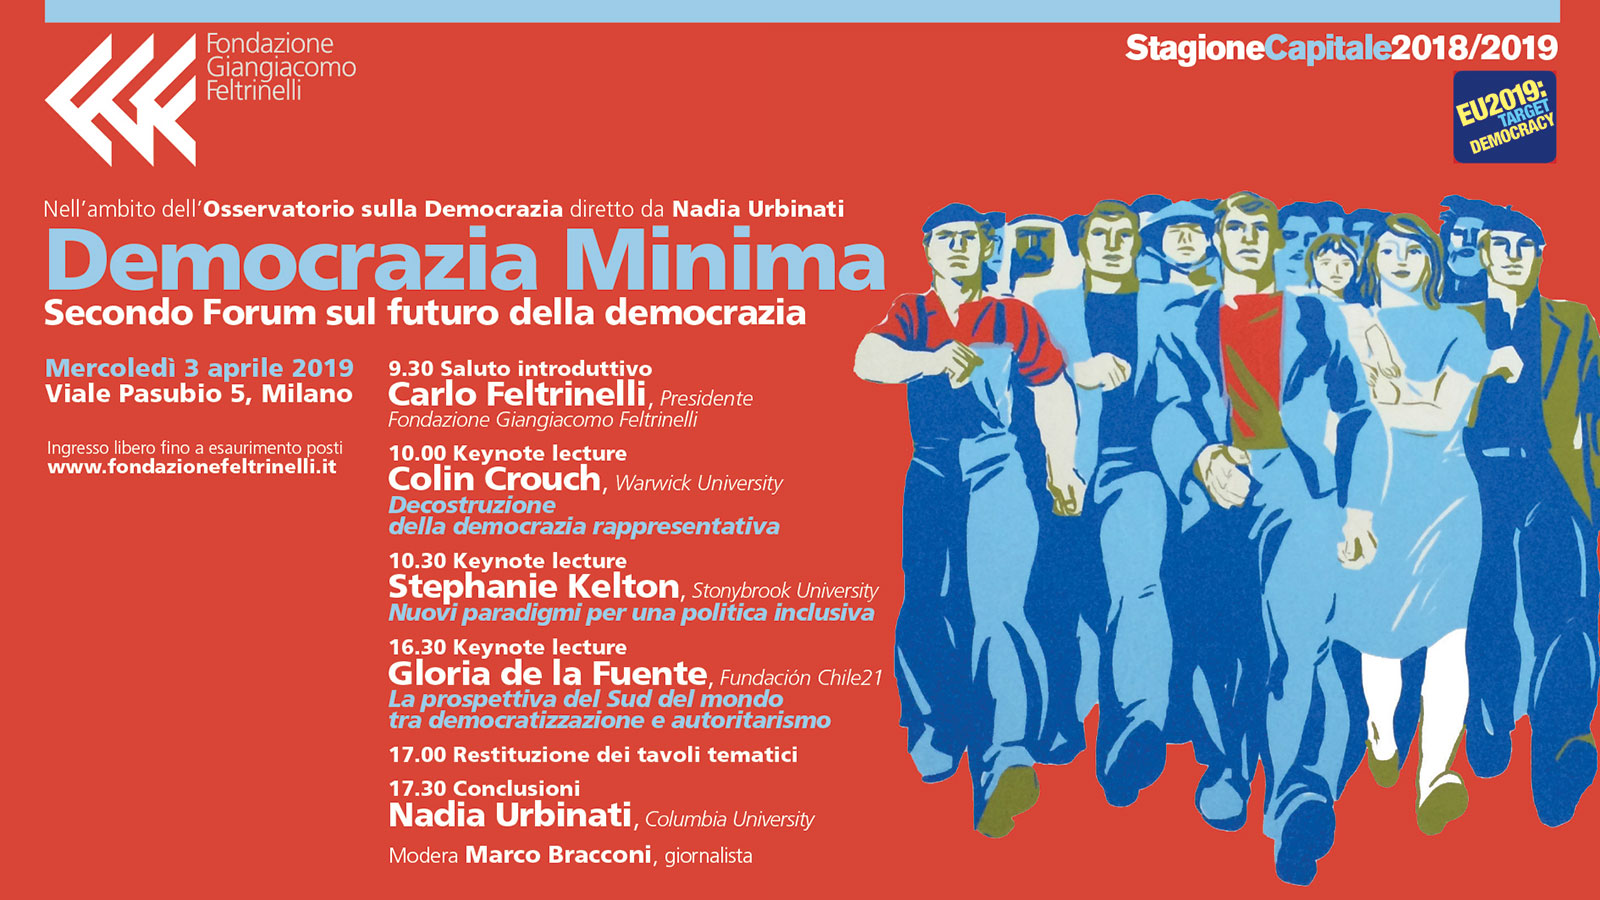 Democrazia minima - Secondo forum sul futuro della democrazia - Fondazione Giangiacomo Feltrinelli